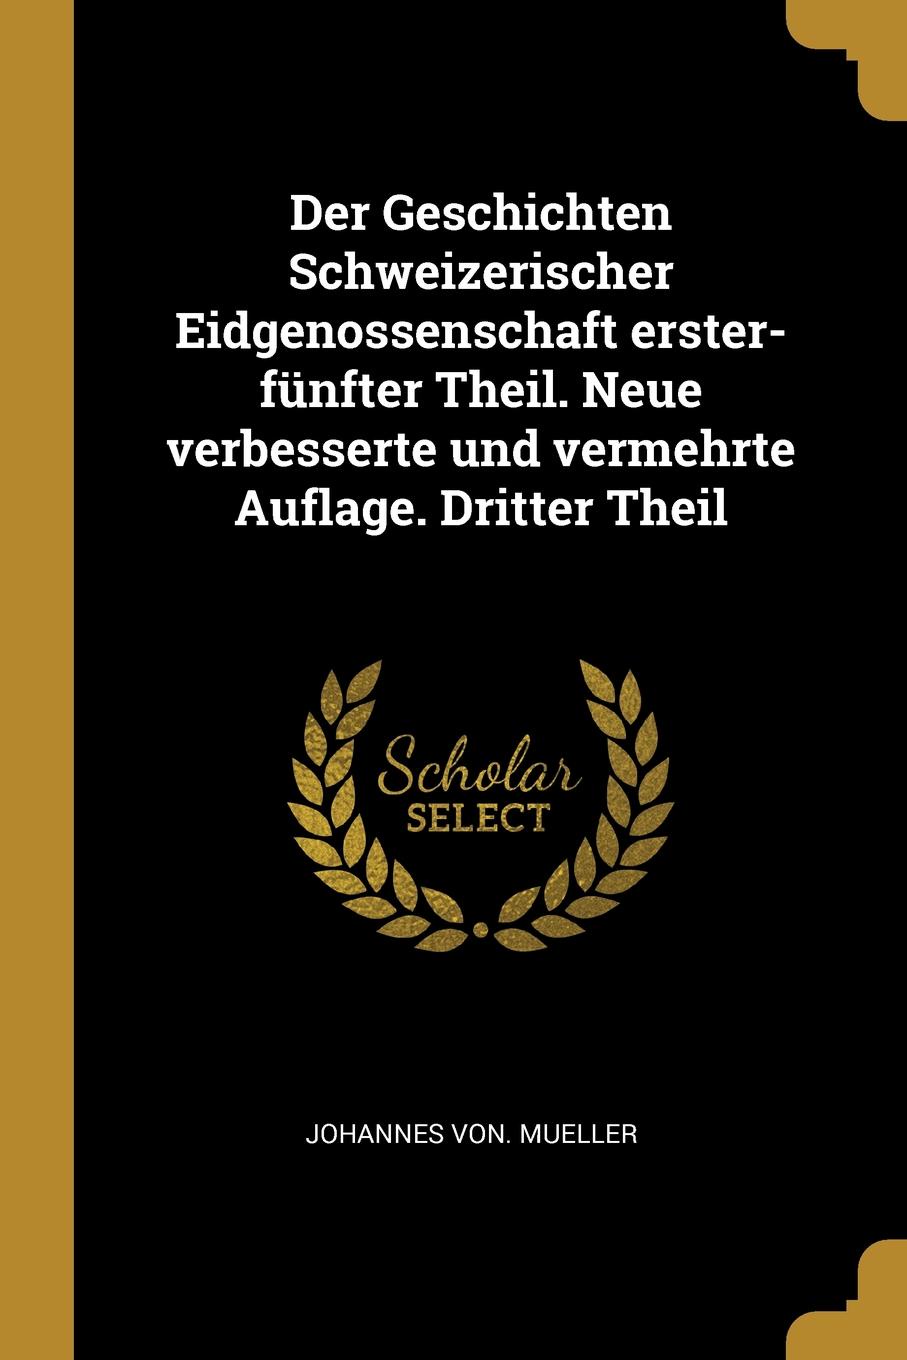 Der Geschichten Schweizerischer Eidgenossenschaft erster-funfter Theil. Neue verbesserte und vermehrte Auflage. Dritter Theil